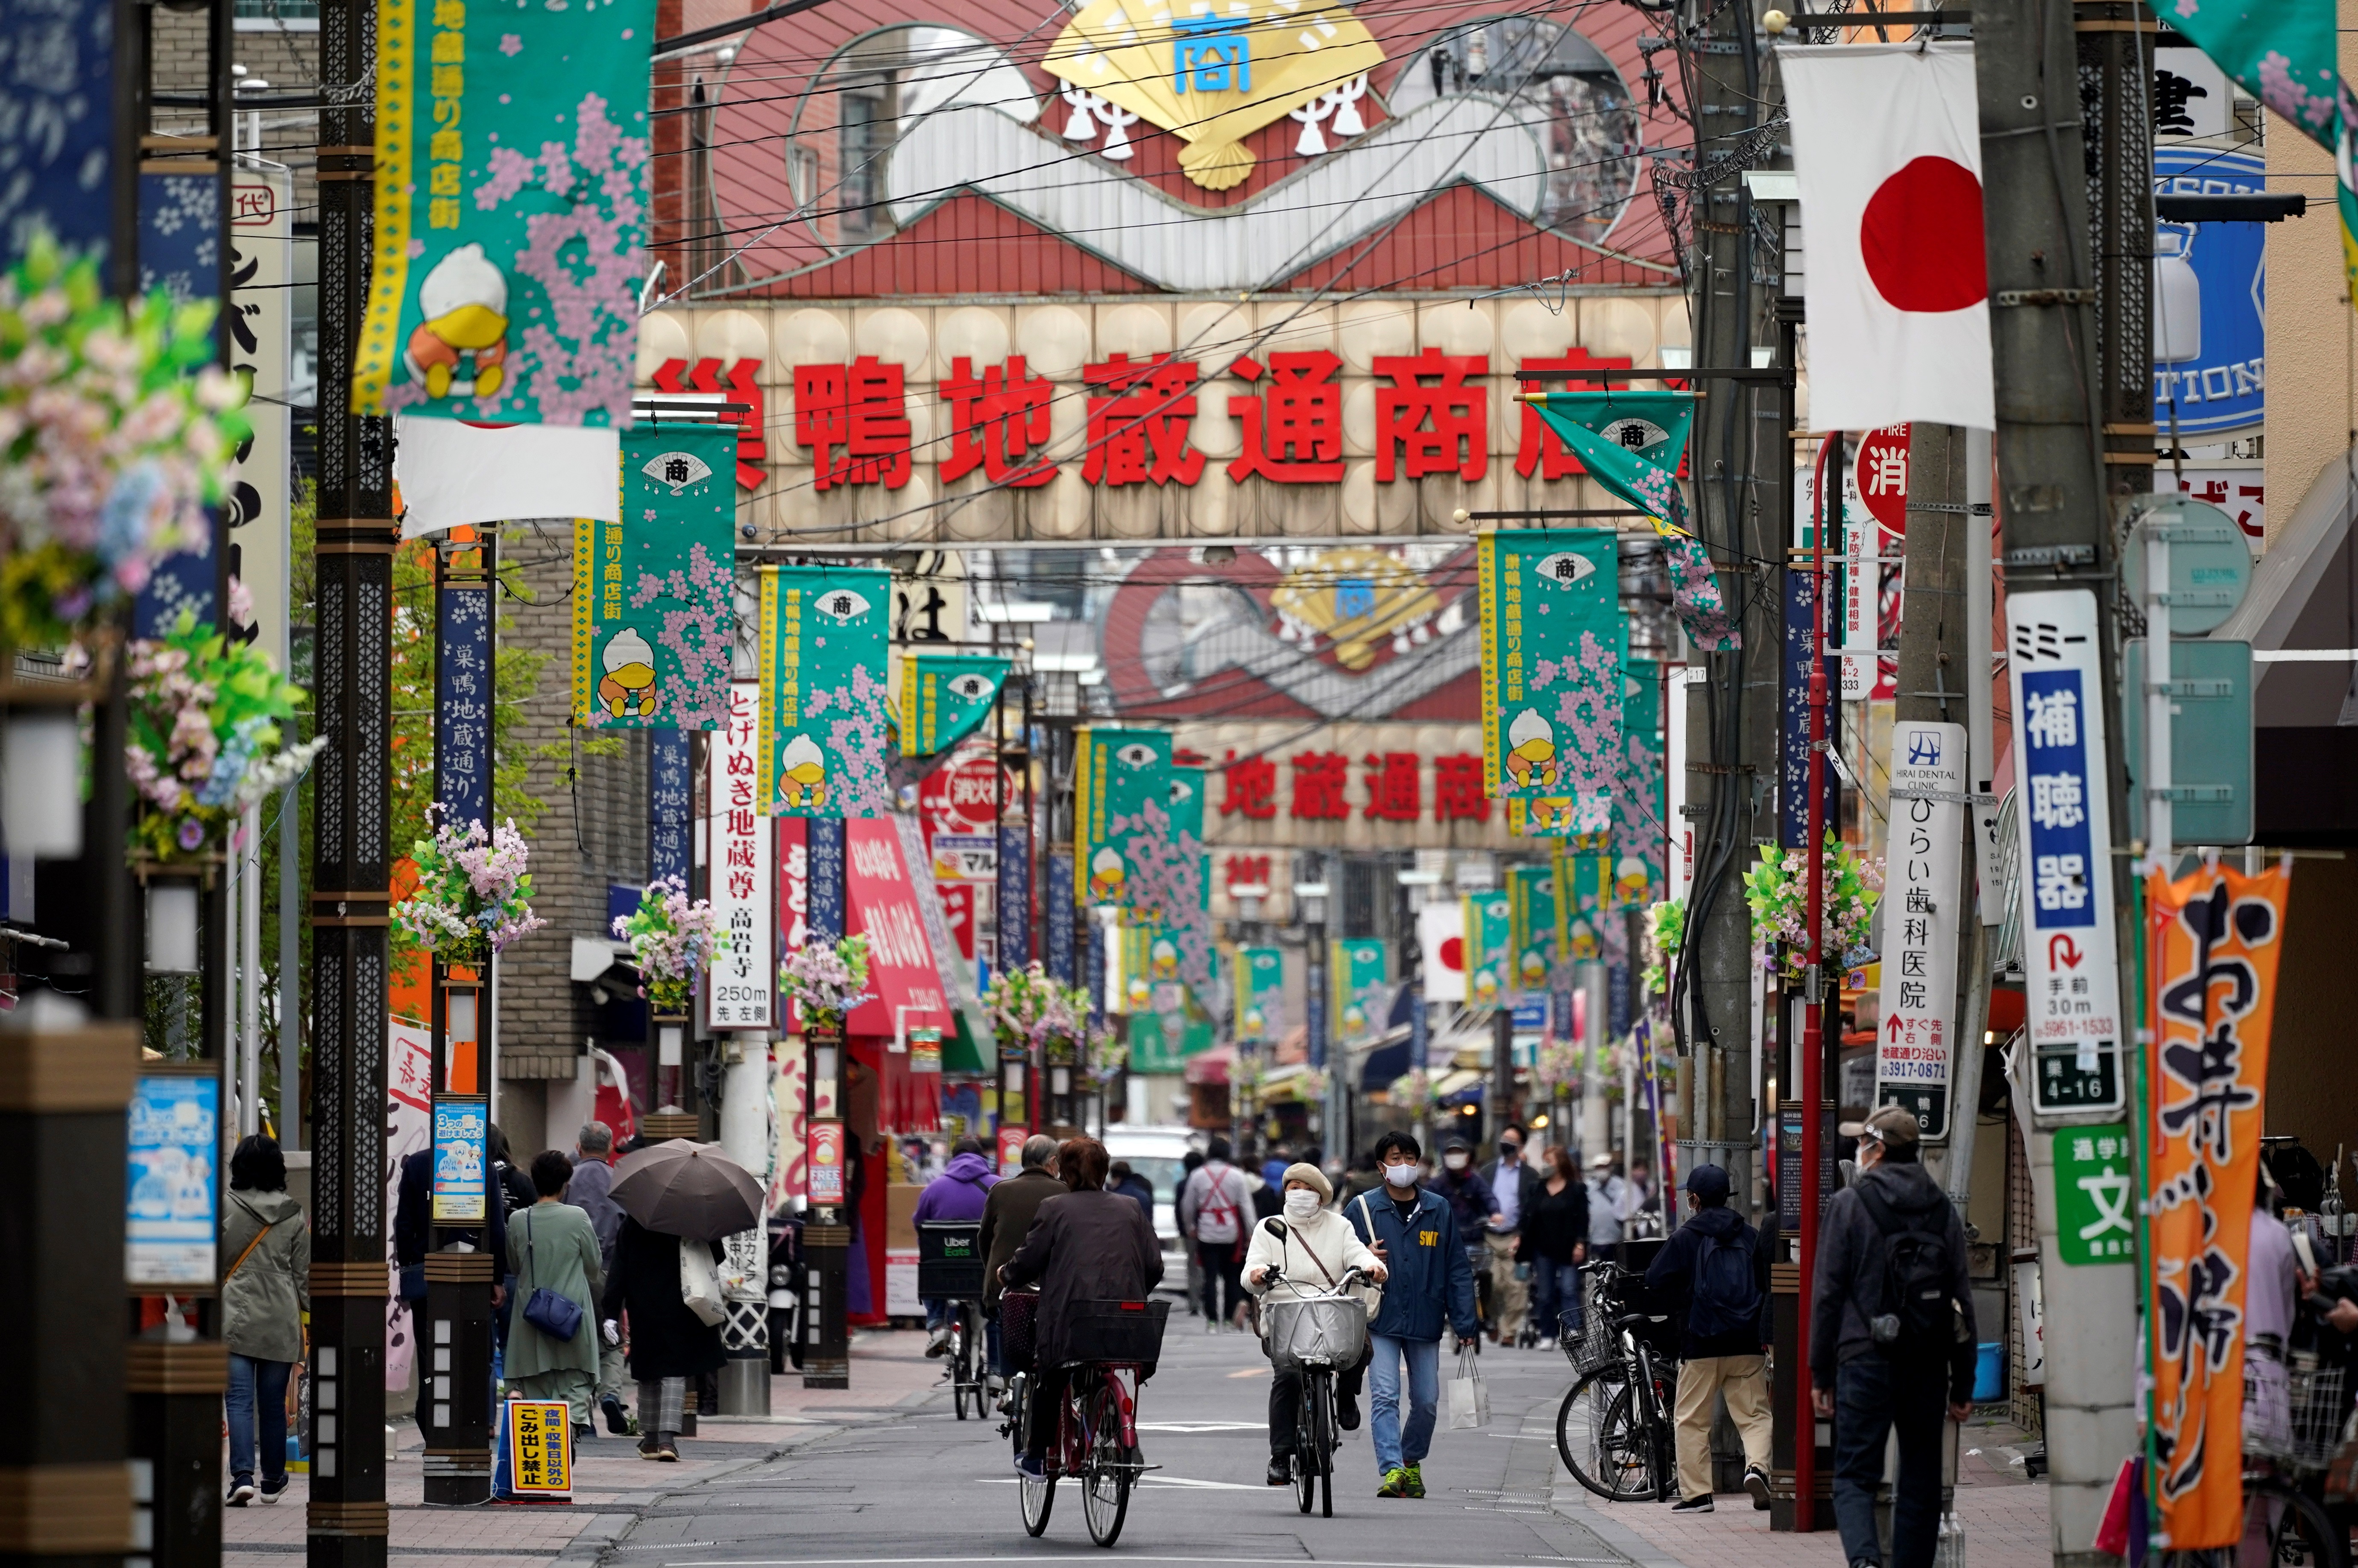 Vivir el presente para poder tener un mejor futuro, pero yendo día a día es como los japoneses han afrontado las circunstancias del presente (Foto: EFE/EPA/FRANCK ROBICHON)